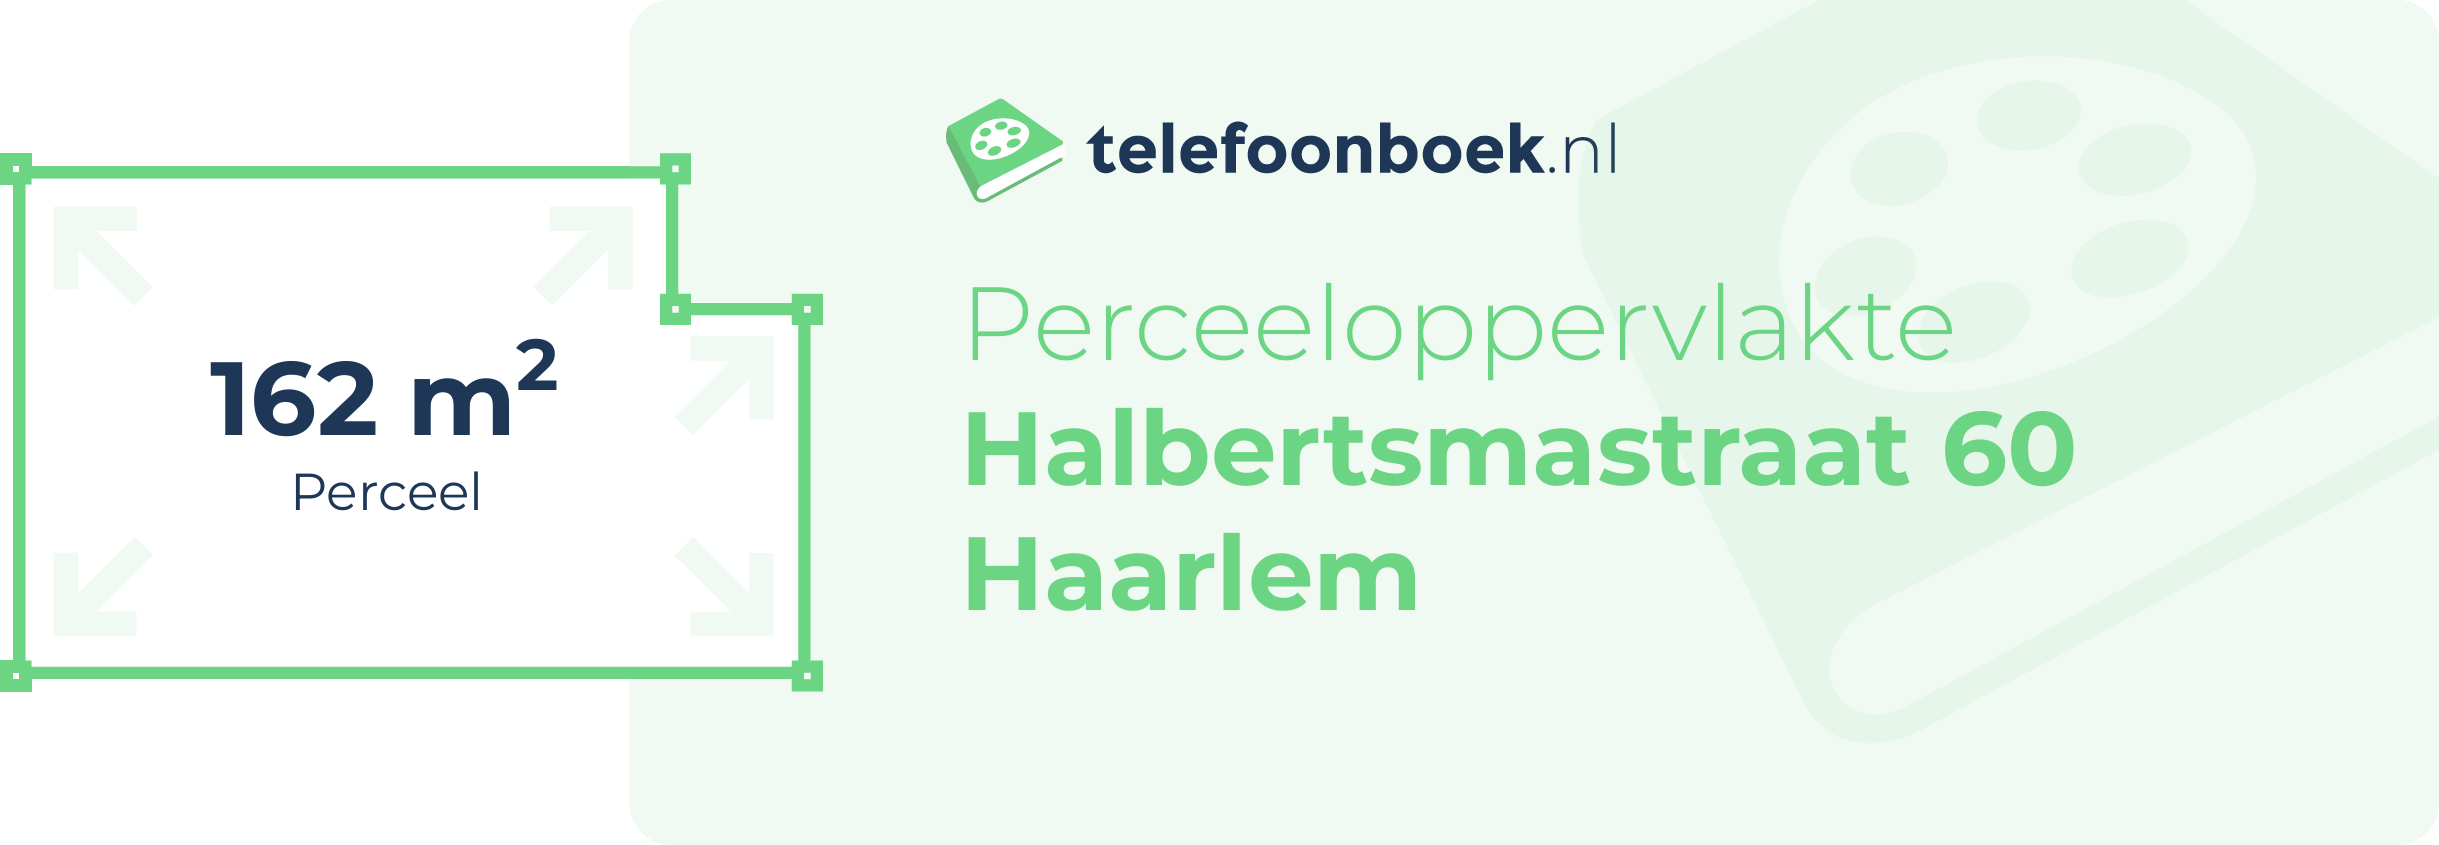 Perceeloppervlakte Halbertsmastraat 60 Haarlem